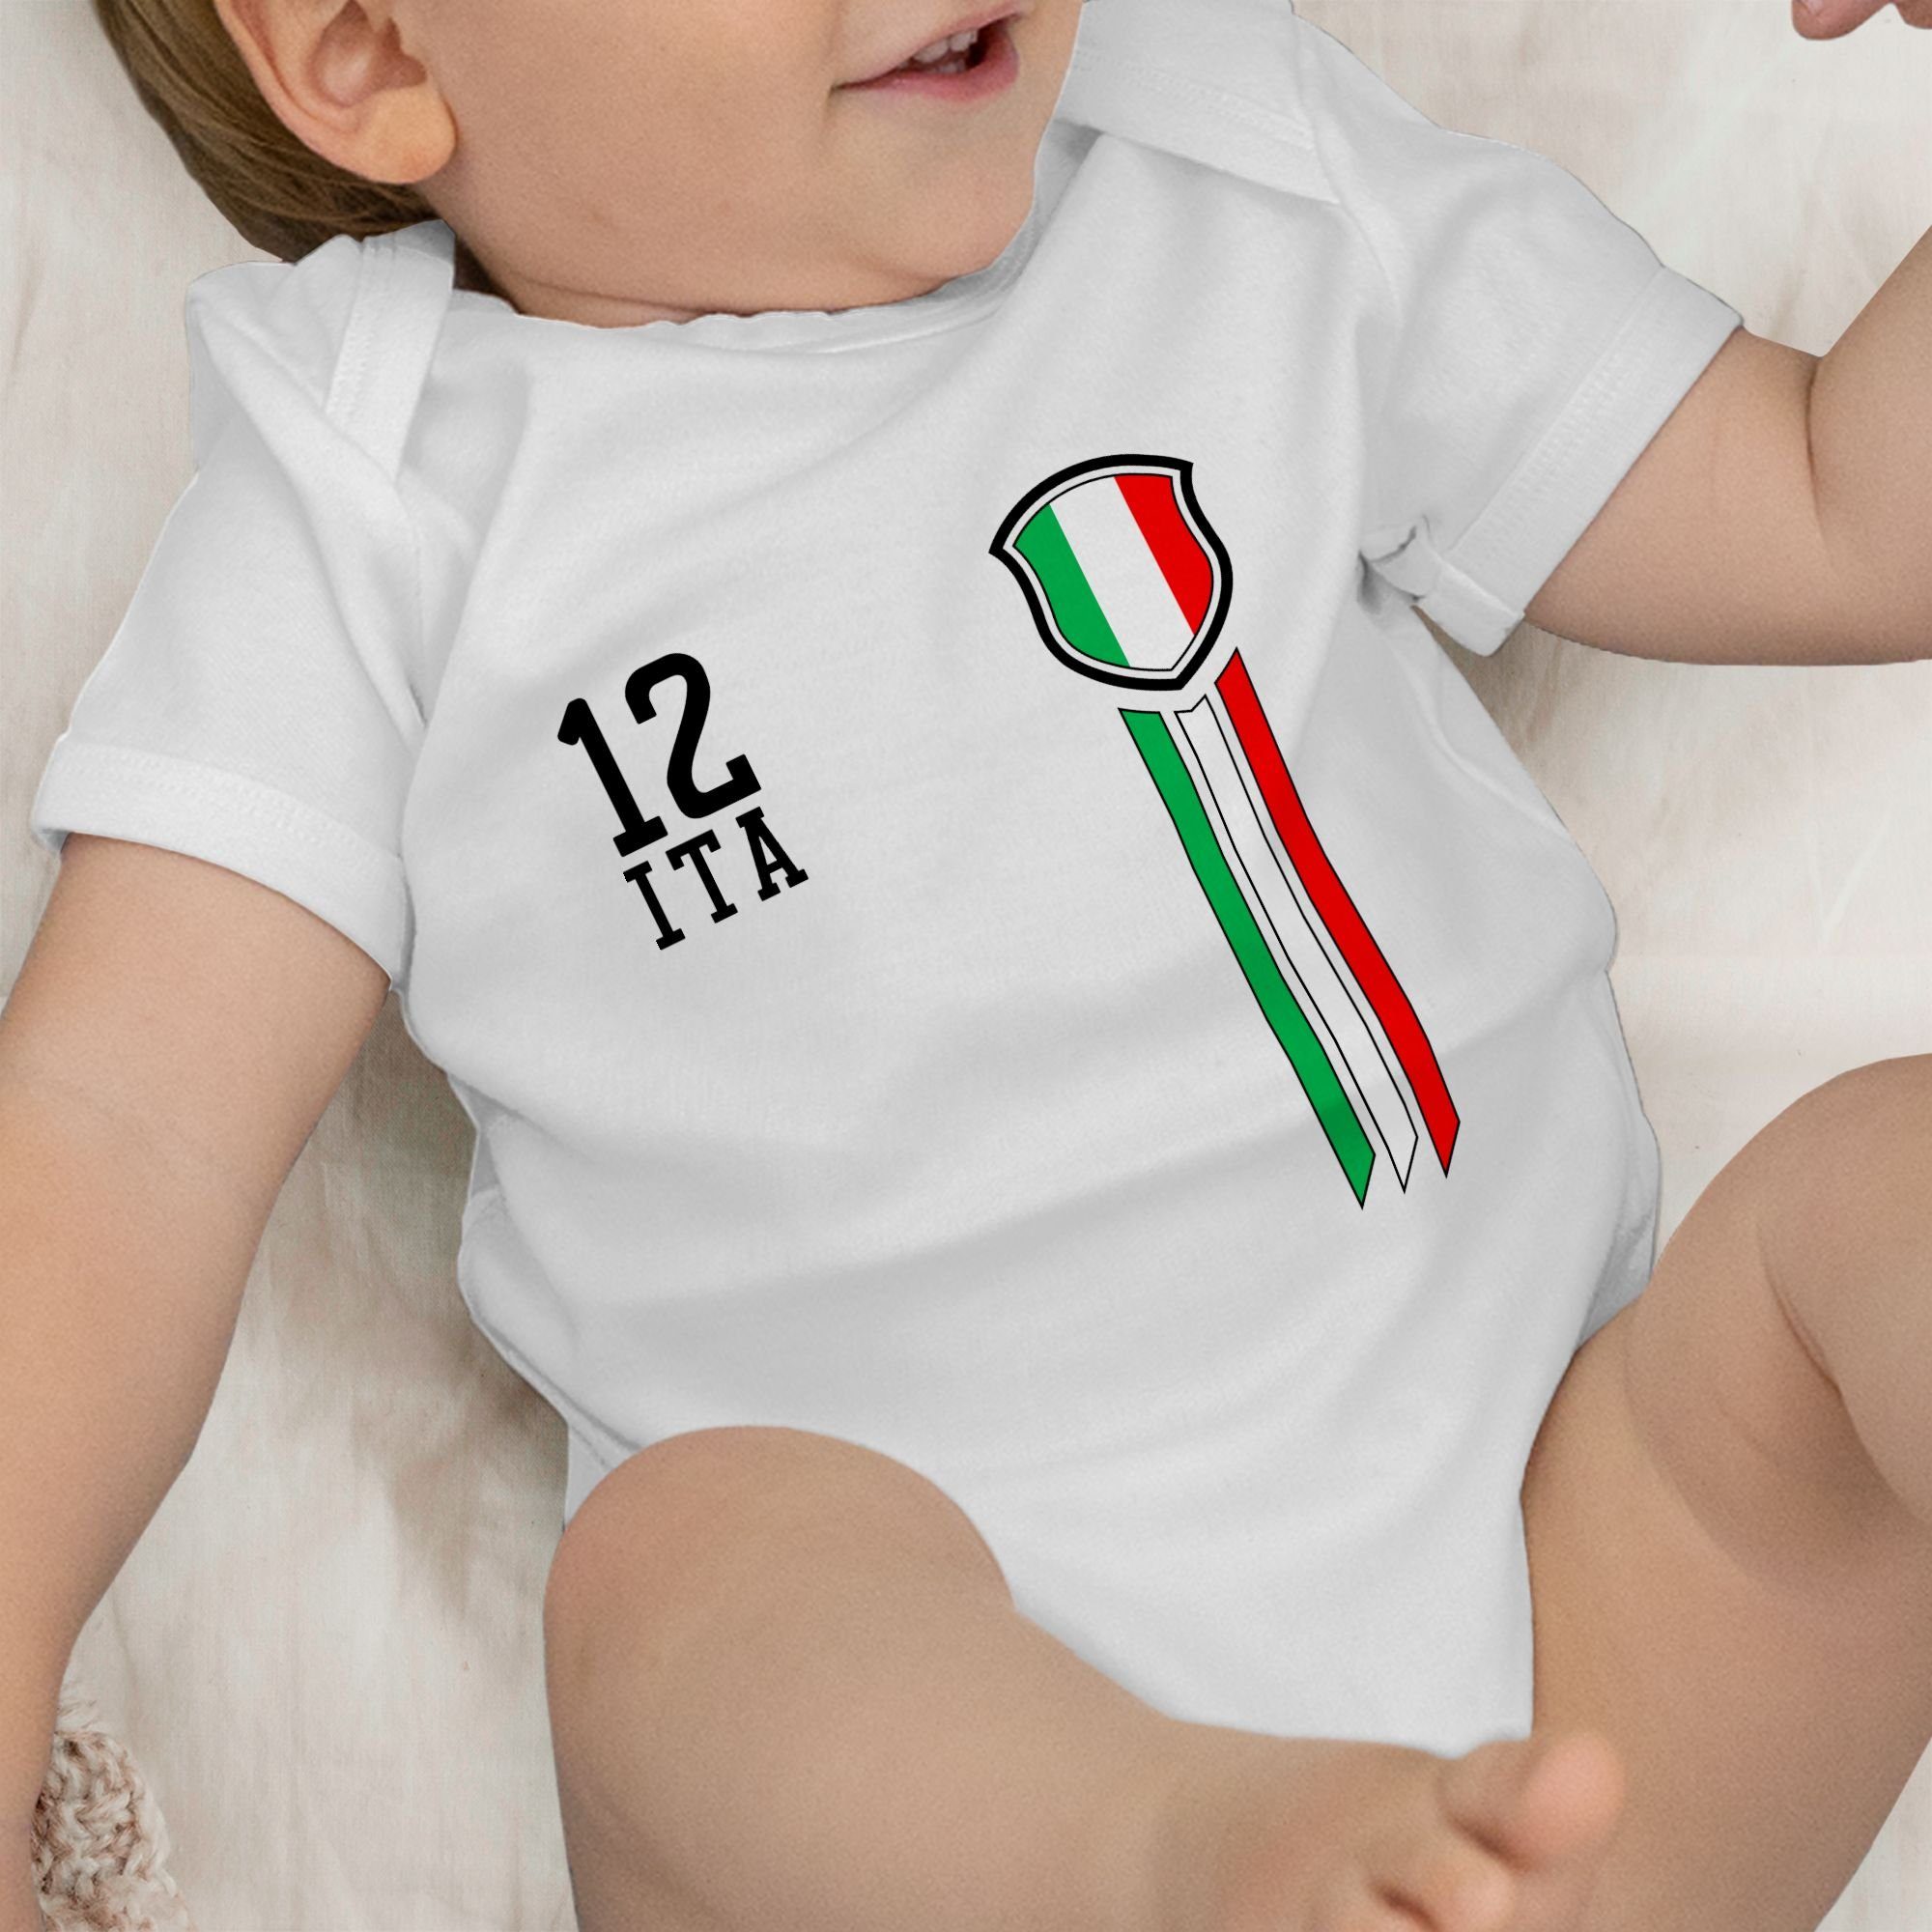 Shirtracer Shirtbody 12. Mann Italien Weiß EM 2024 Fanshirt 3 Baby Fussball